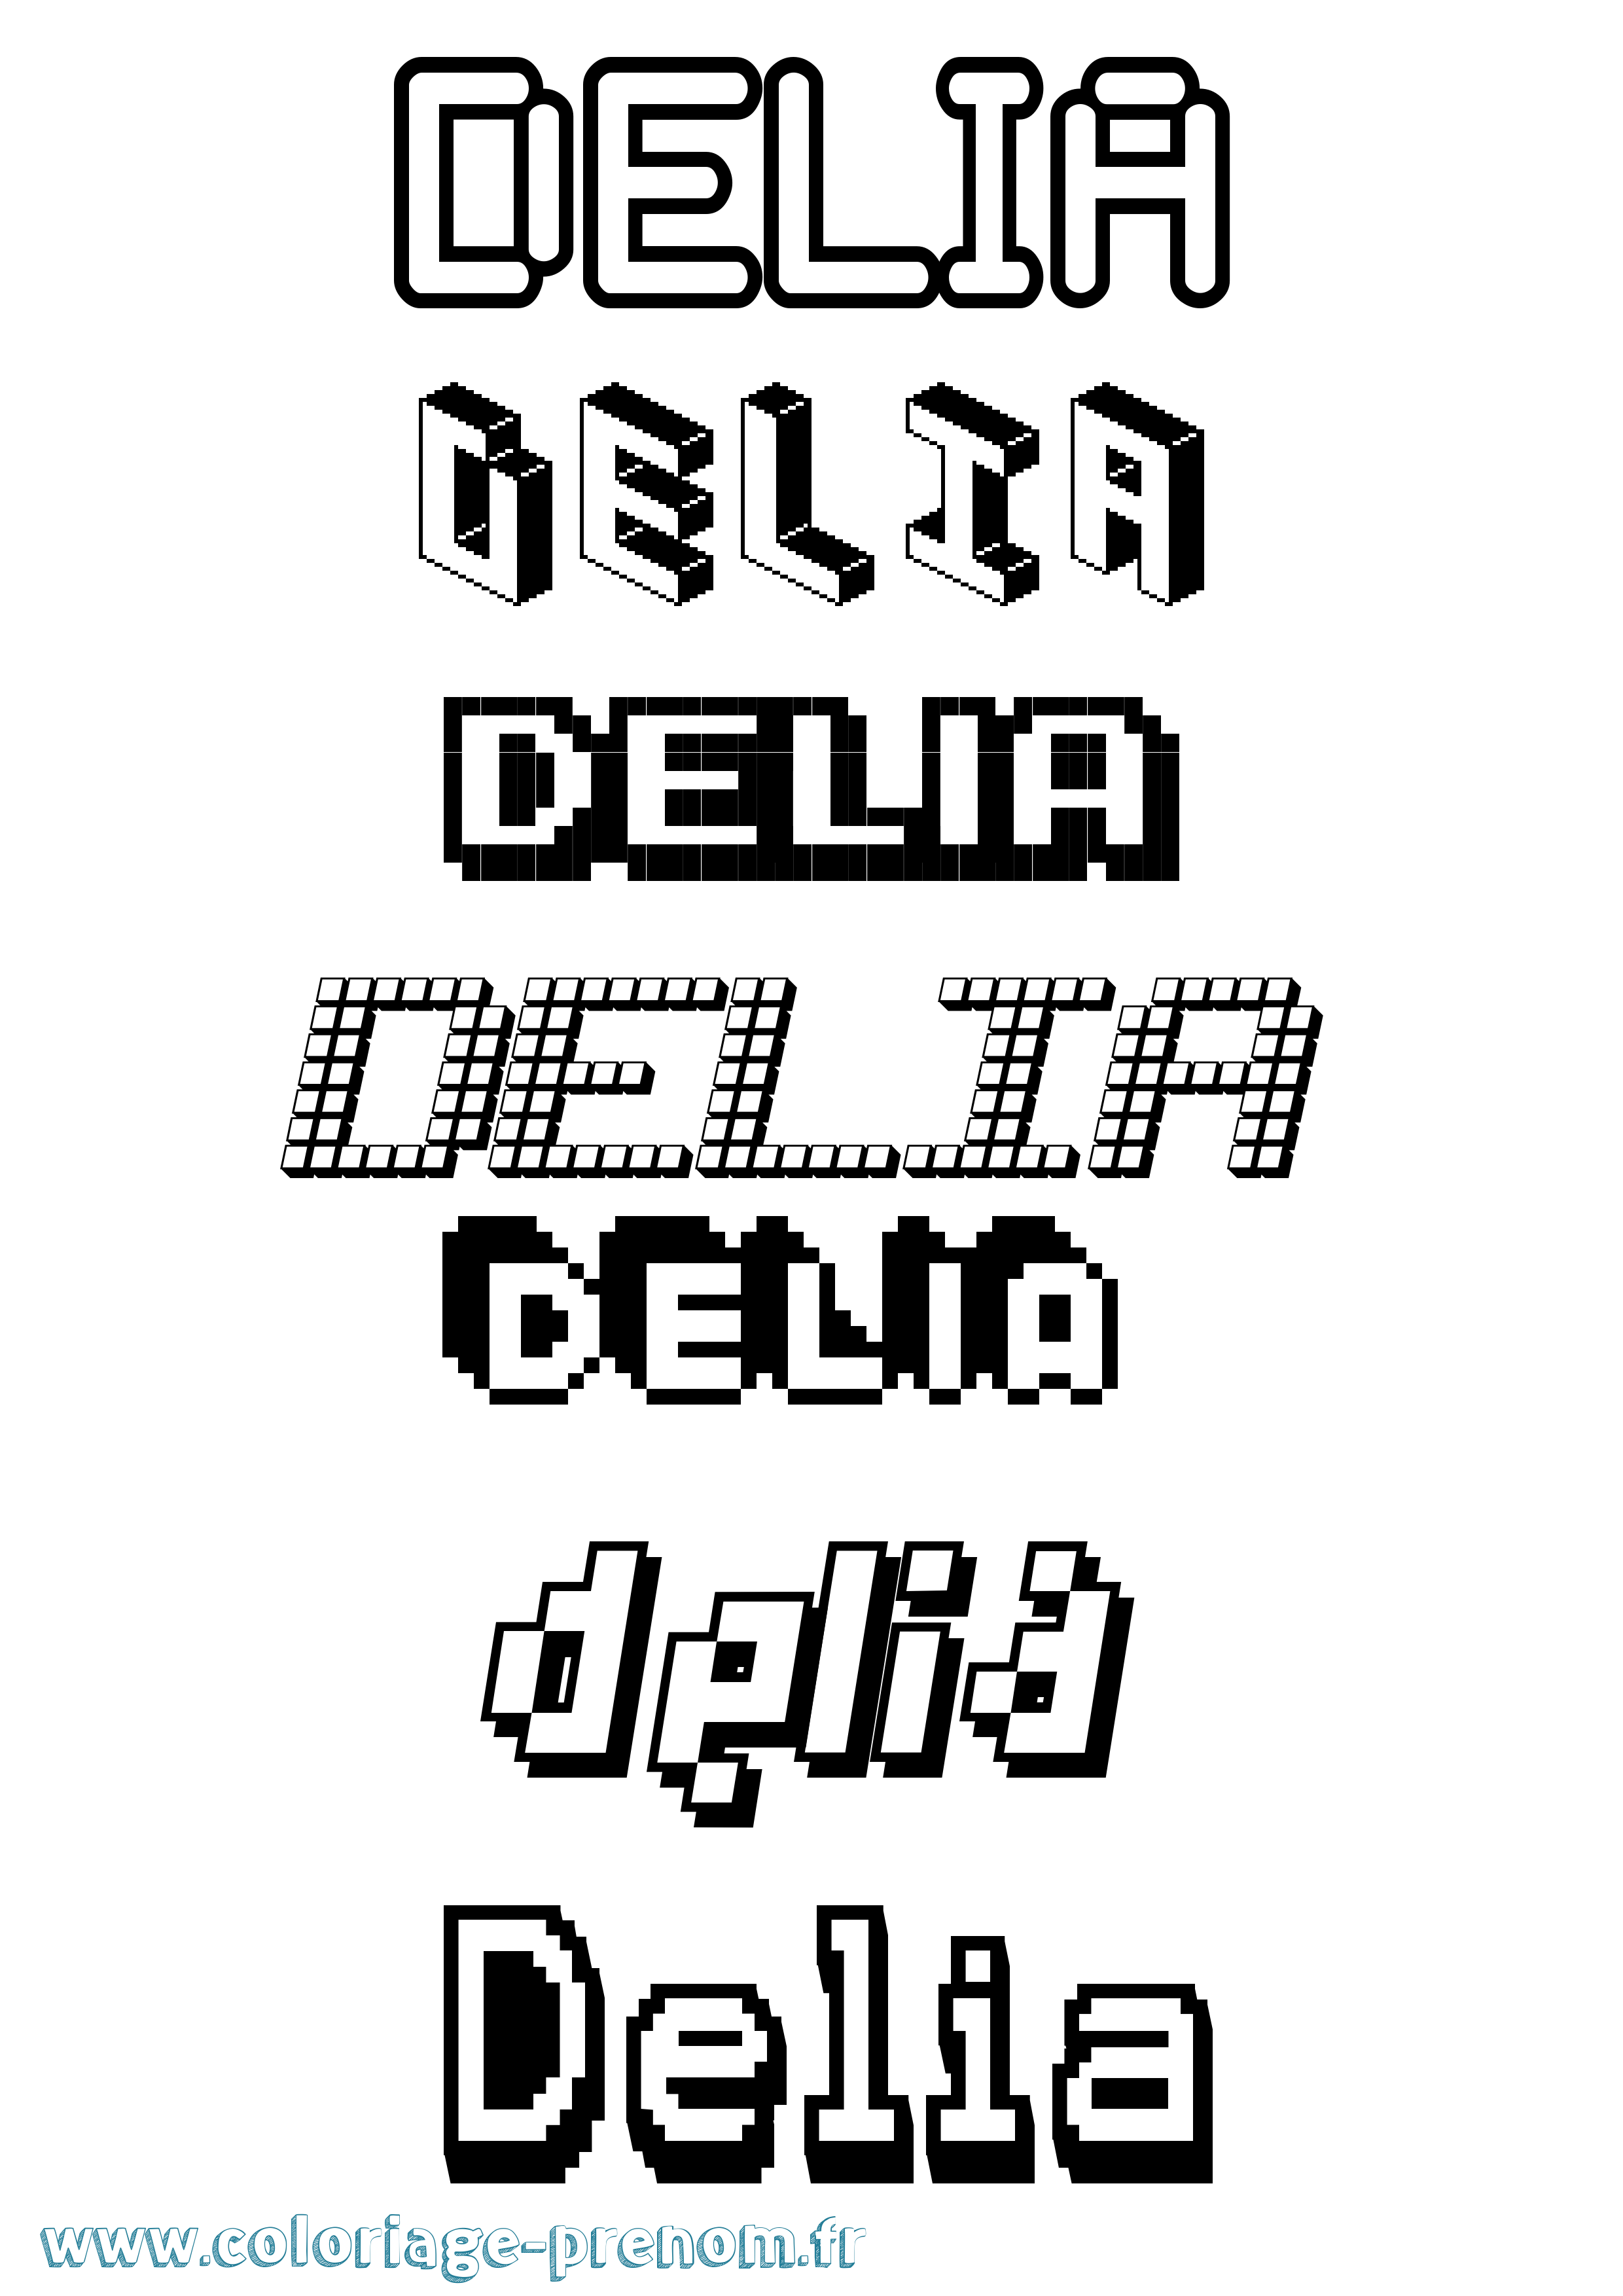 Coloriage prénom Delia Pixel